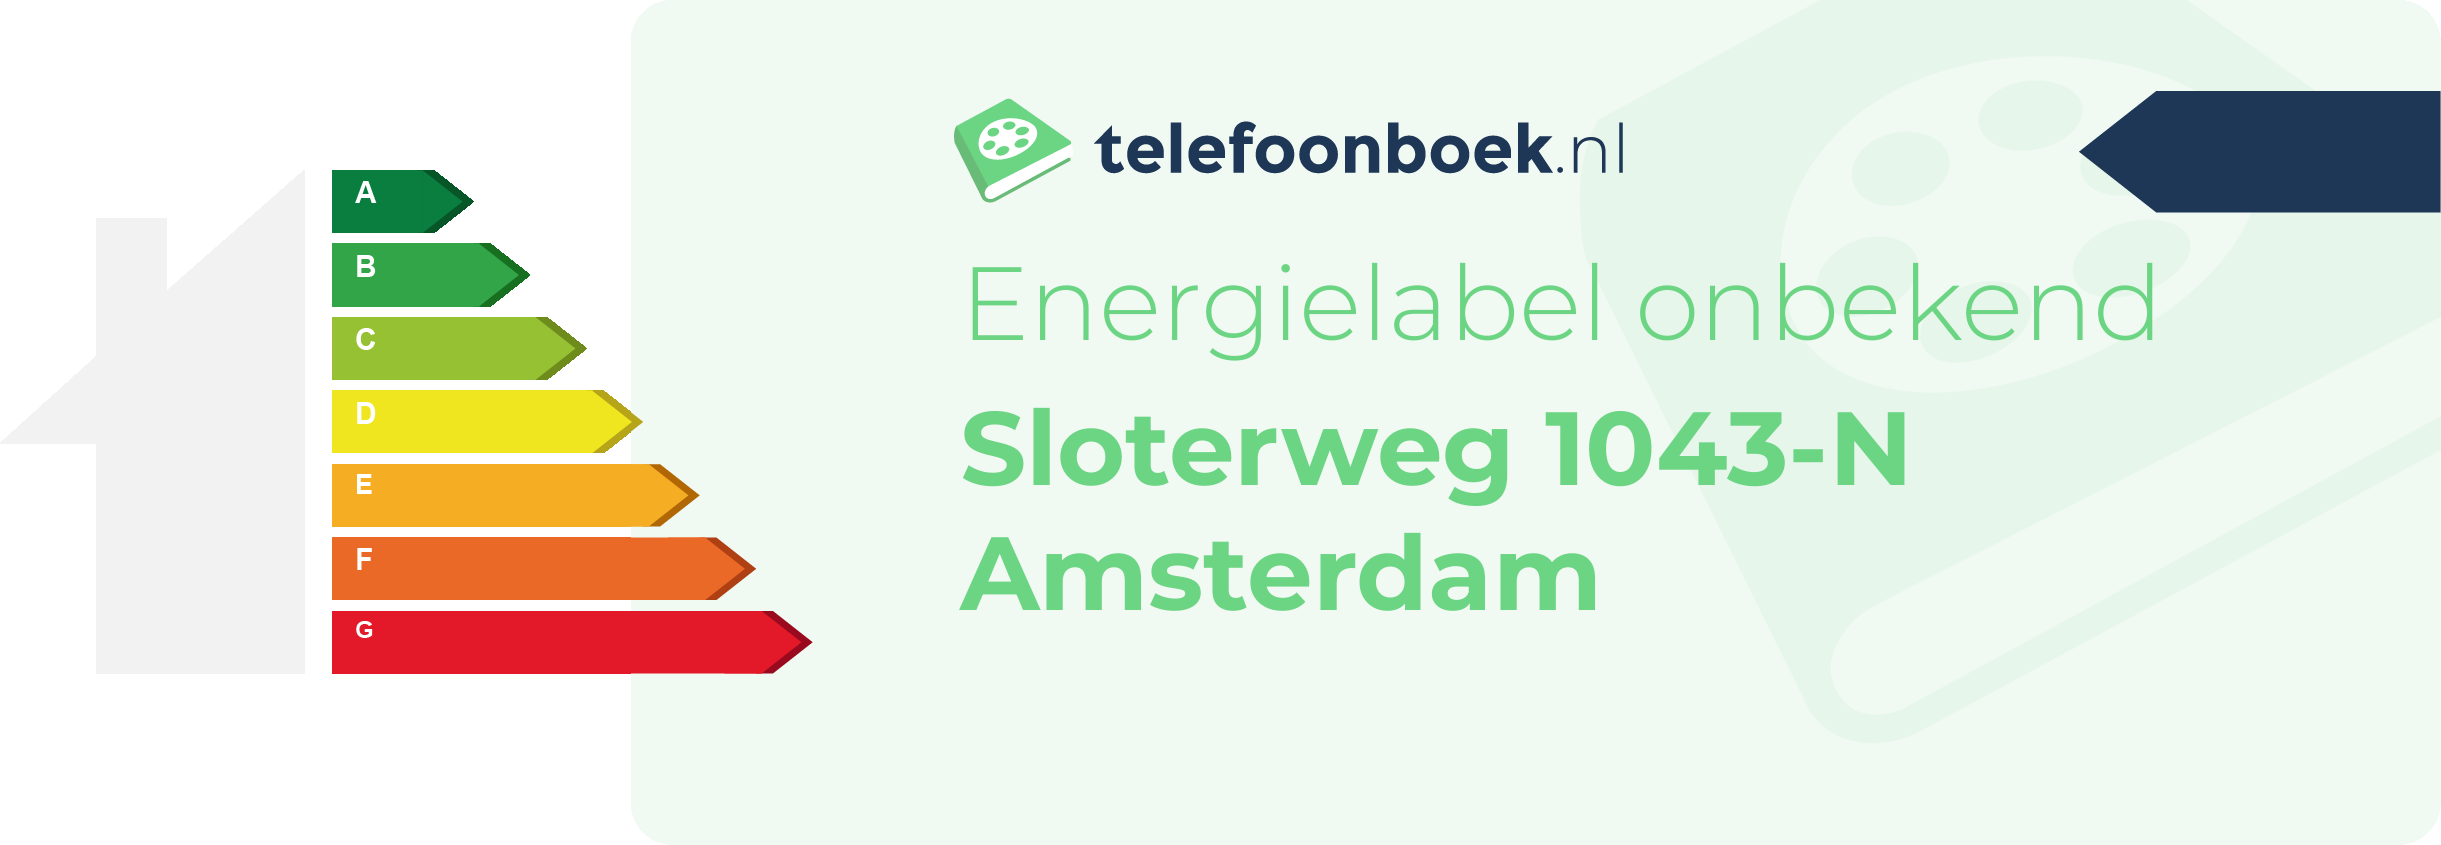 Energielabel Sloterweg 1043-N Amsterdam